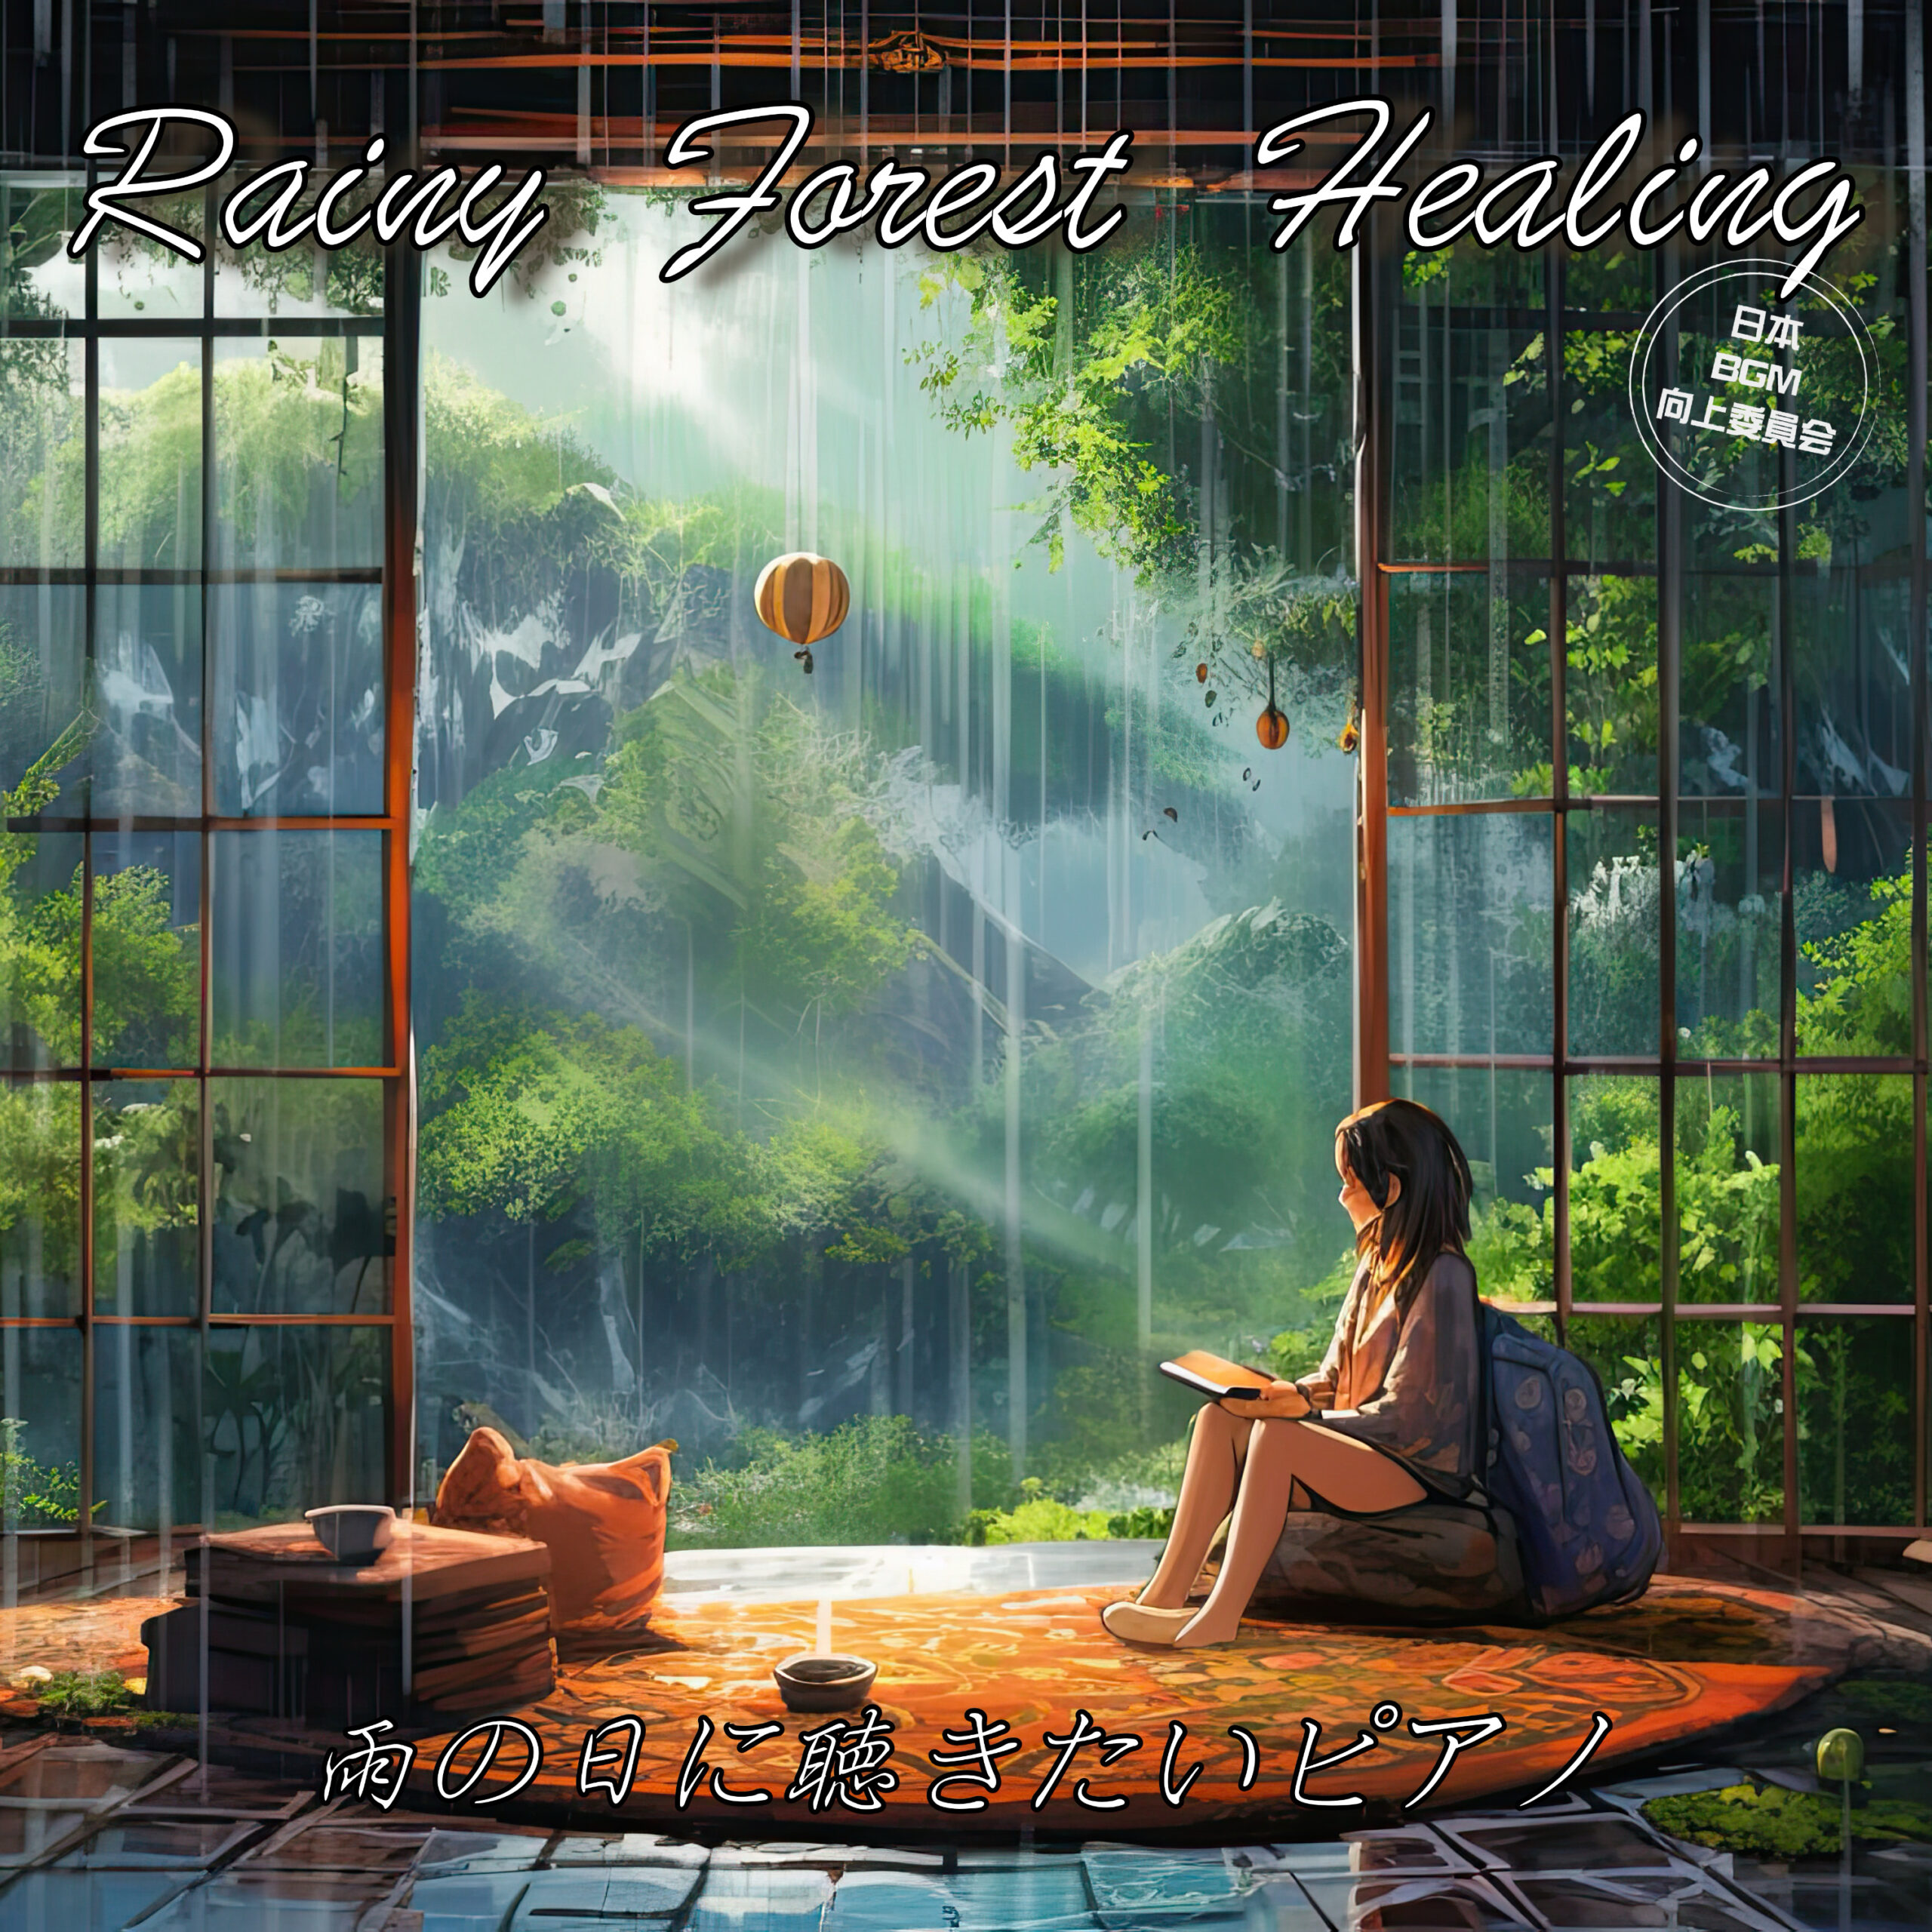 Rainy Forest Healing 雨の日に聴きたいピアノ 睡眠用 リラックス用 瞑想用 雨の露と森の香り